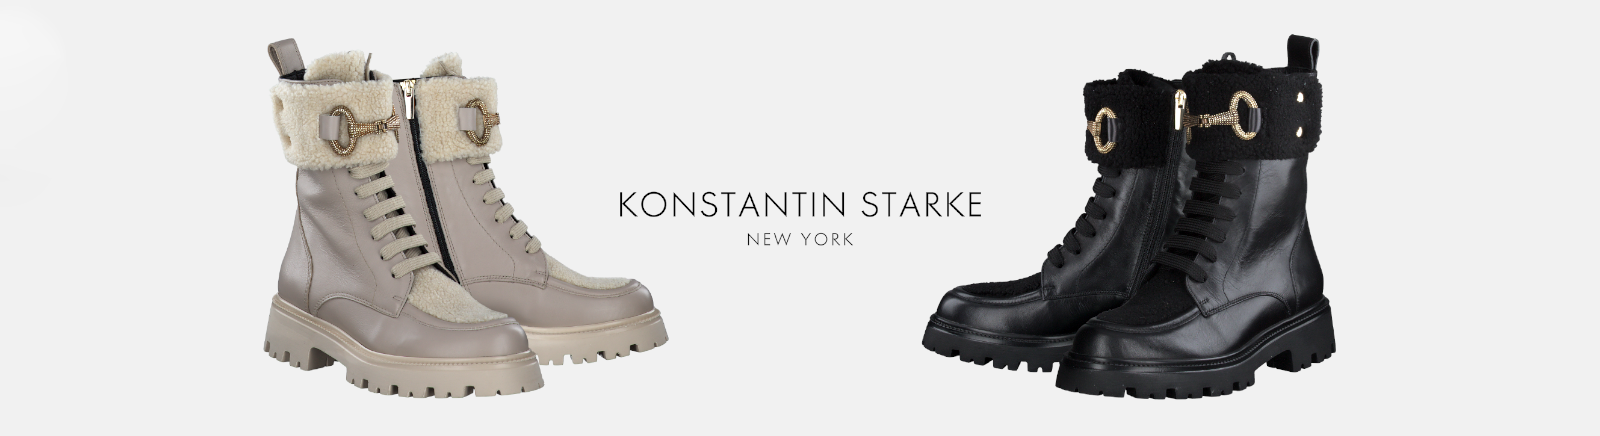 Konstantin Starke Schuhe online kaufen im Shop von GISY